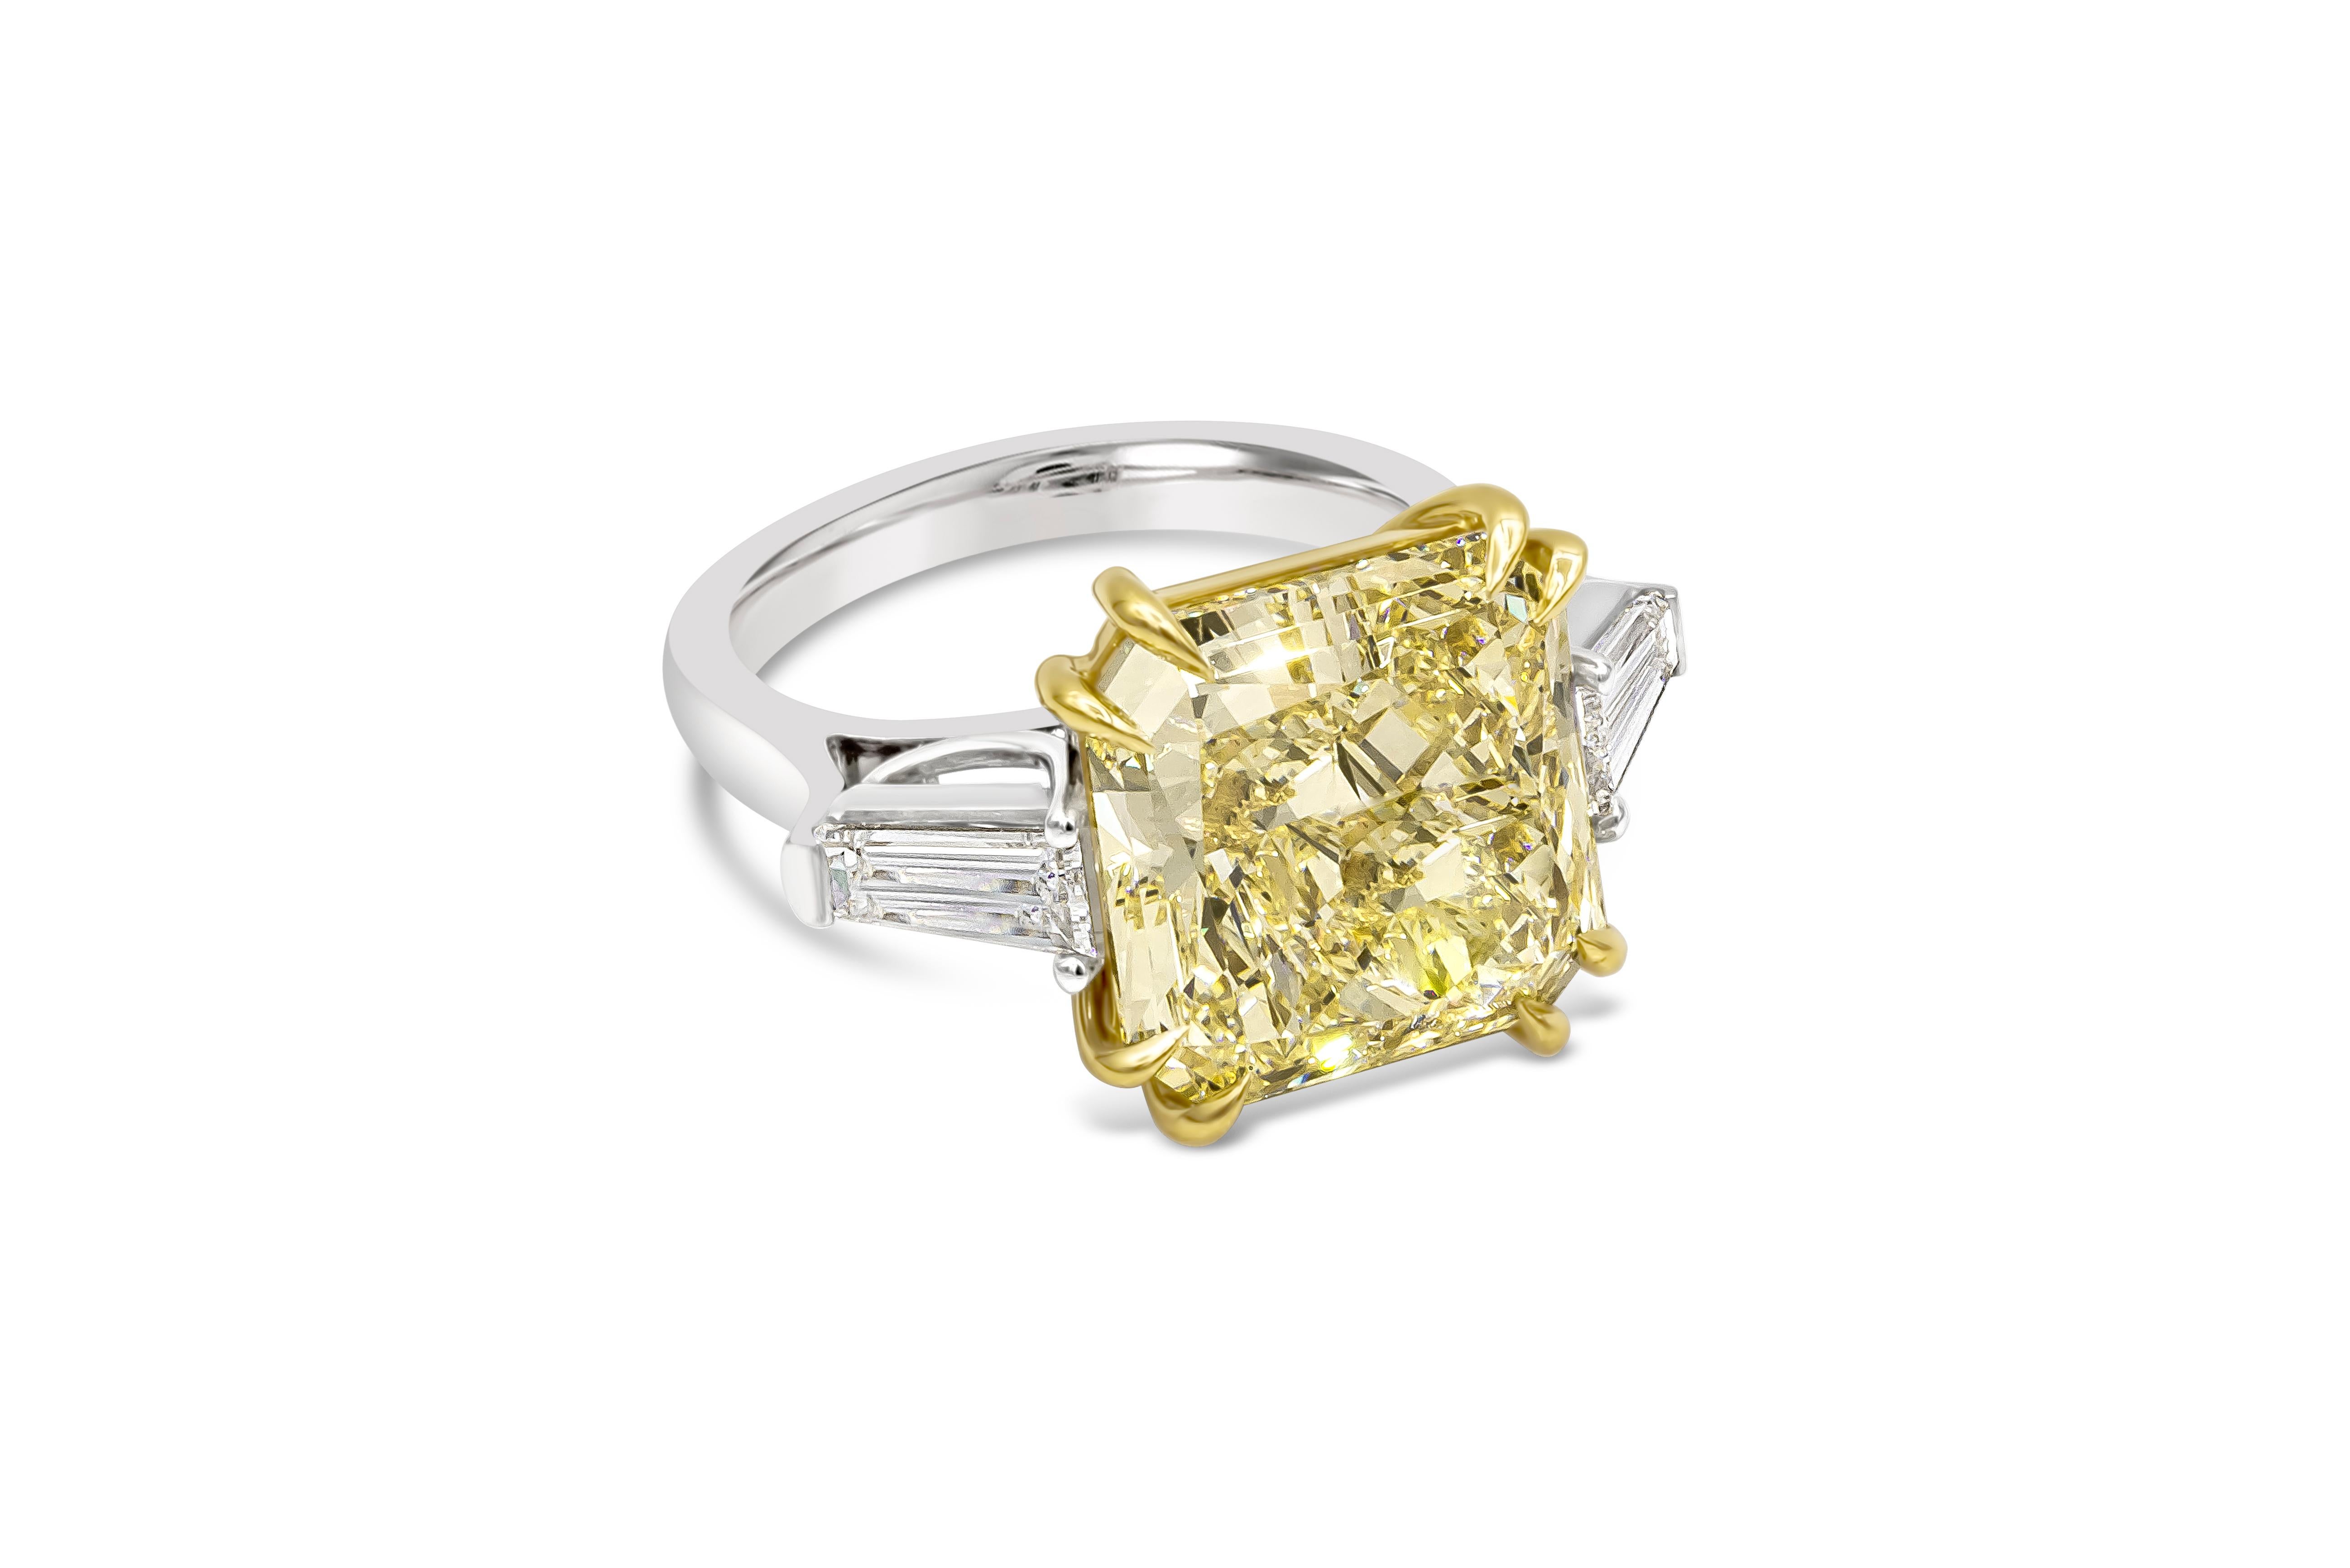 Ein eleganter Verlobungsring mit drei Steinen, der einen farbenprächtigen Diamanten mit 10,11 Karat im Brillantschliff präsentiert, der von GIA als fancy light yellow color und SI1 clarity zertifiziert wurde und in einem achtzackigen Korb aus 18